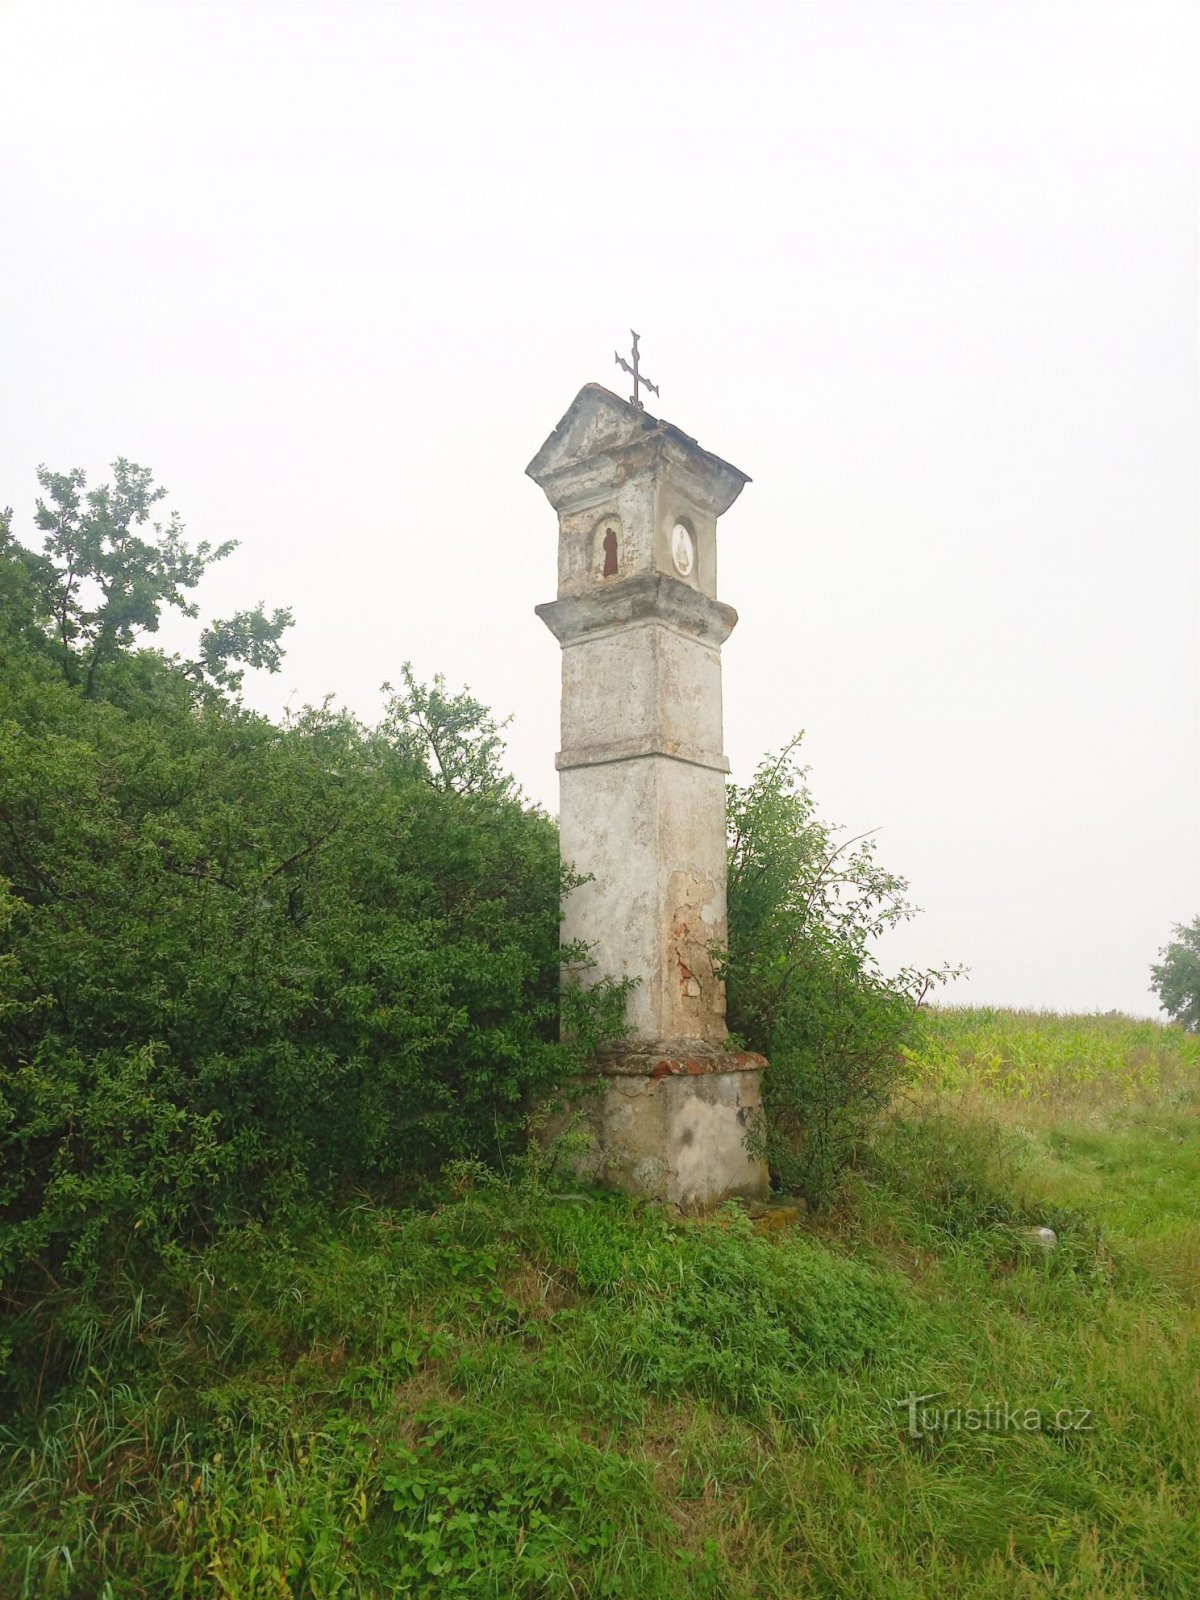 2. L'agonie aux piliers de briques près de Kňovice au tournant des XVIIIe et XIXe siècles